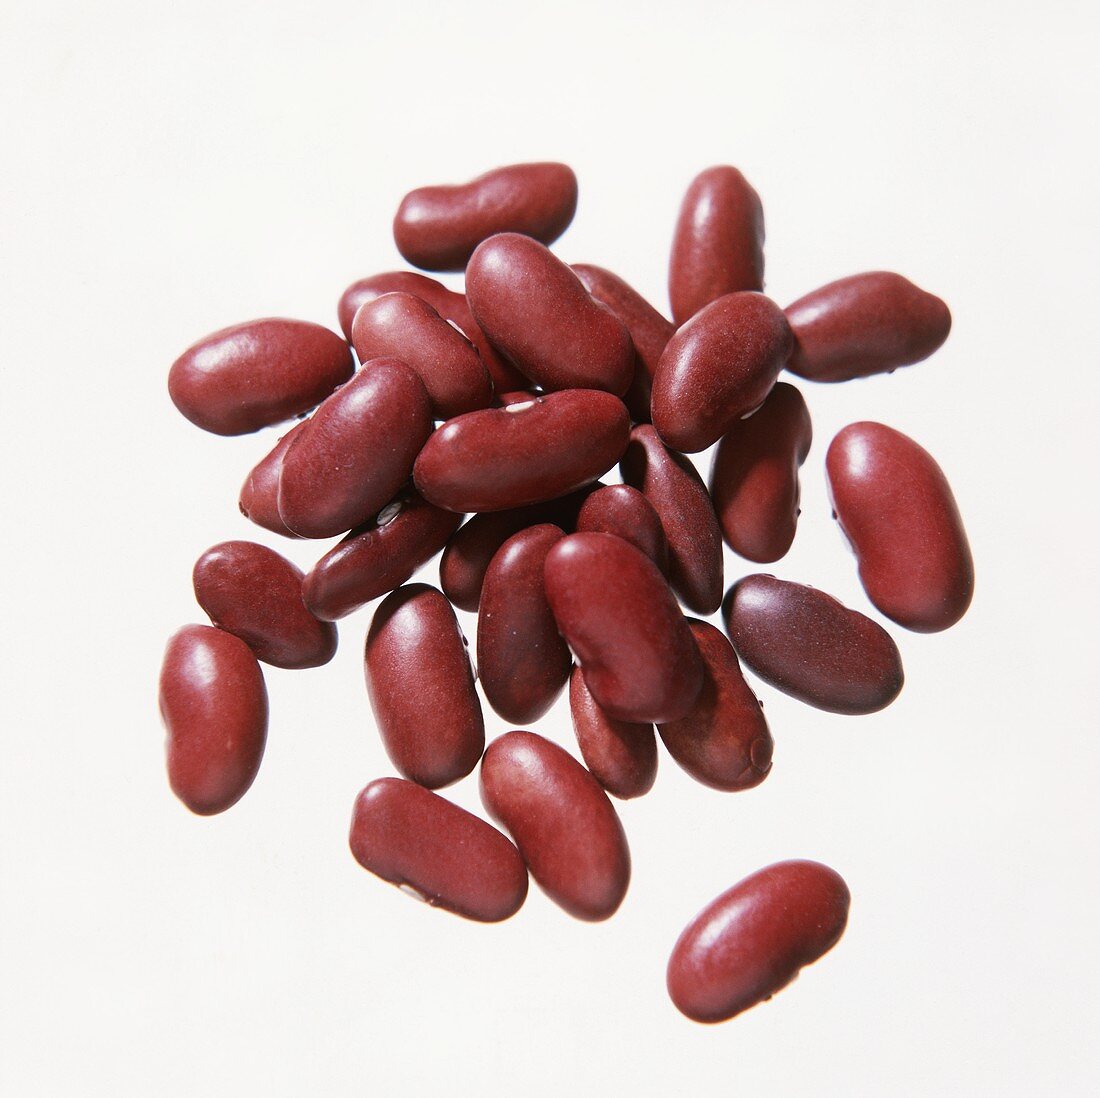 Several Kidney Beans